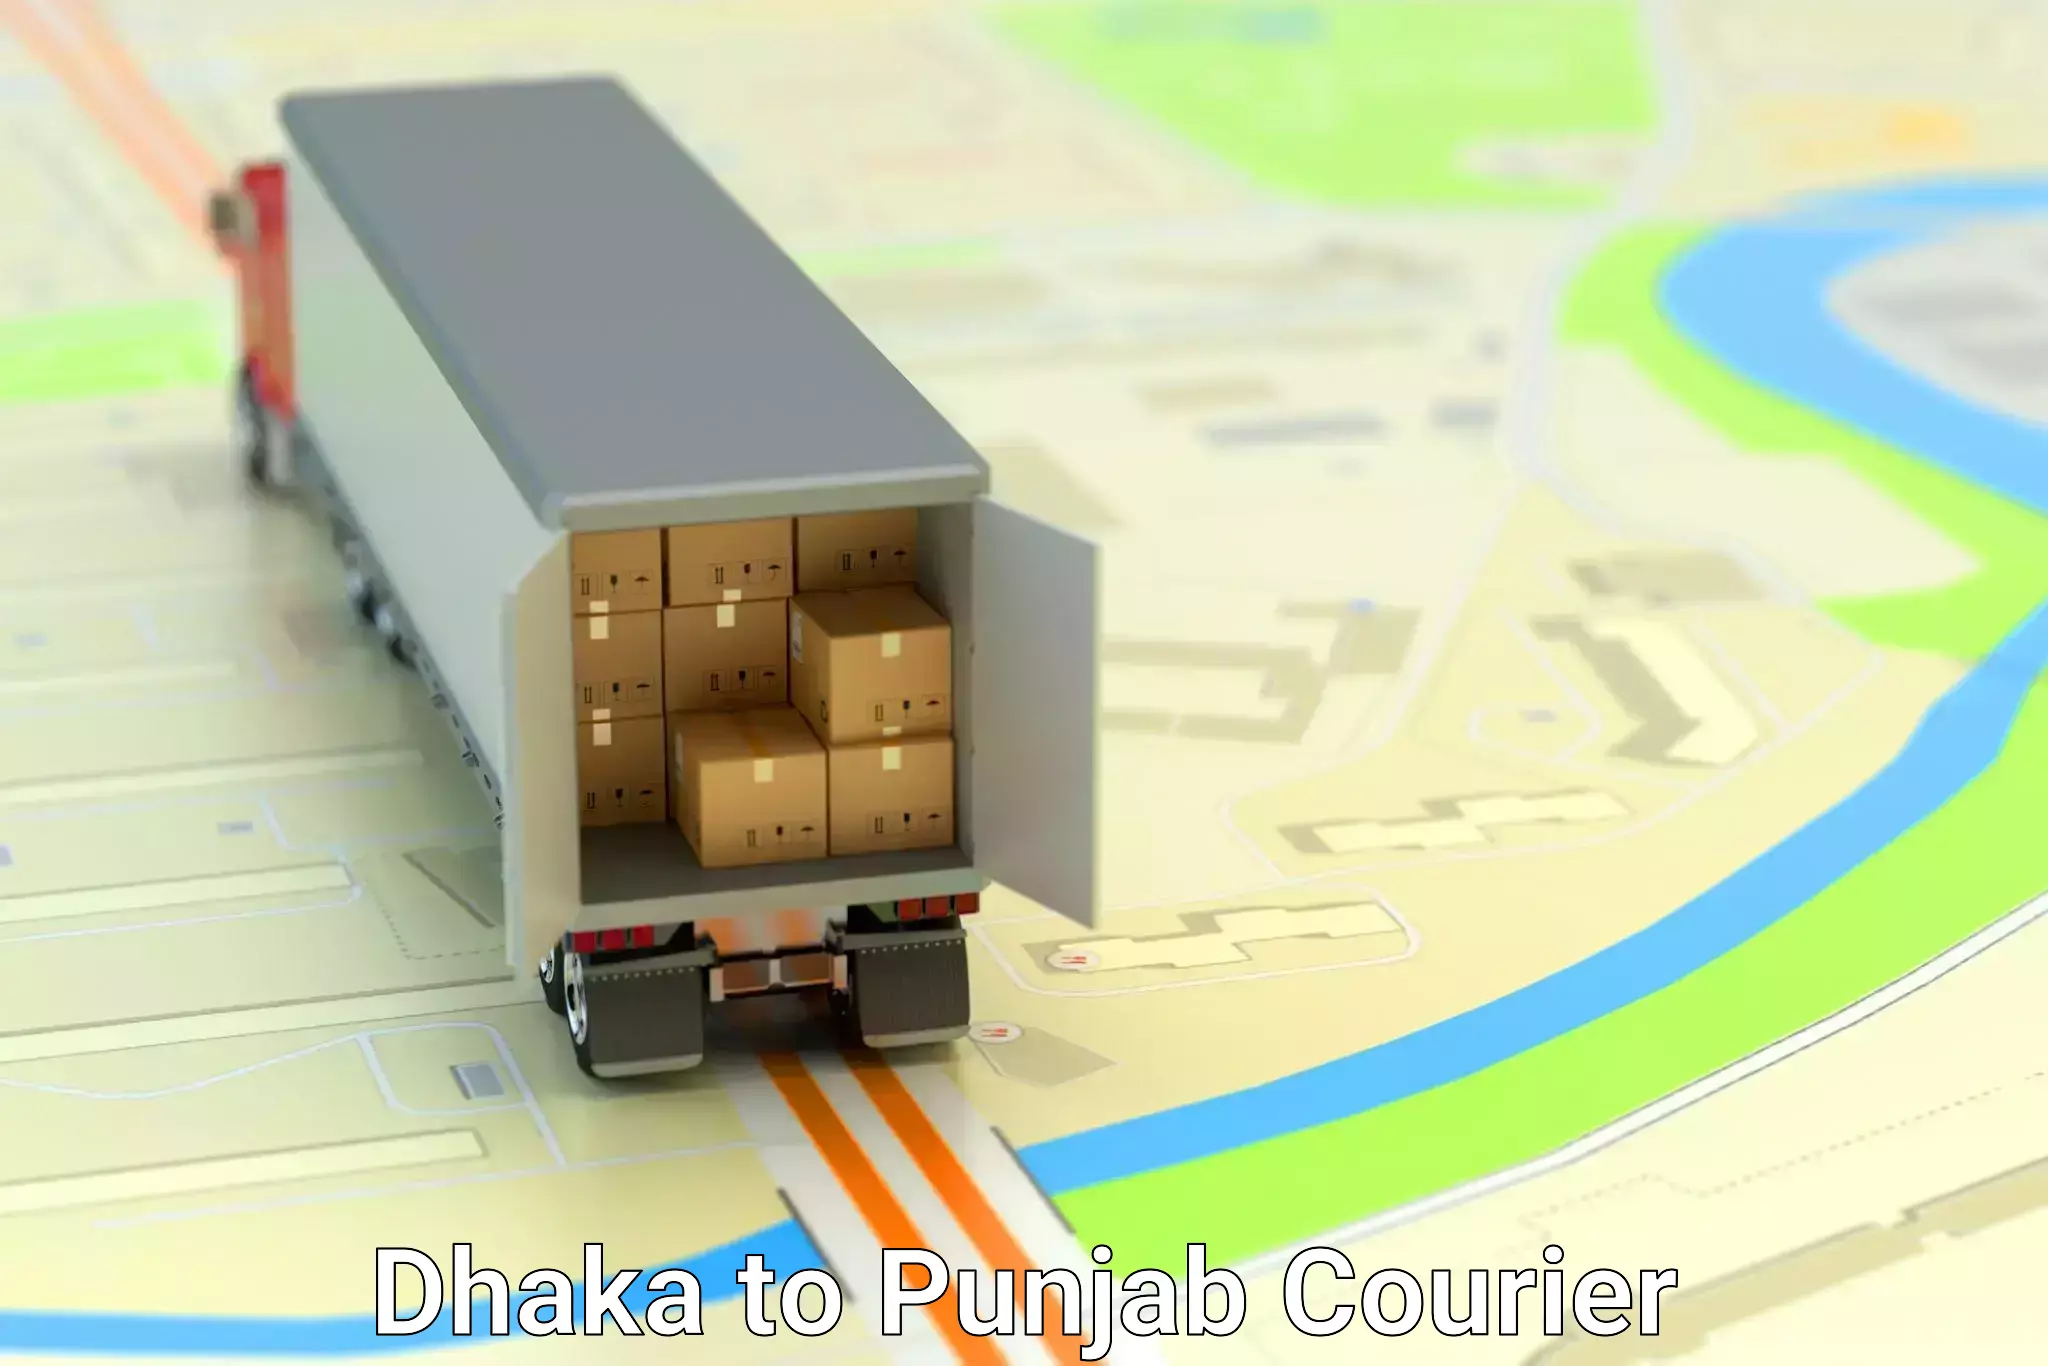 Furniture moving service Dhaka to Punjab